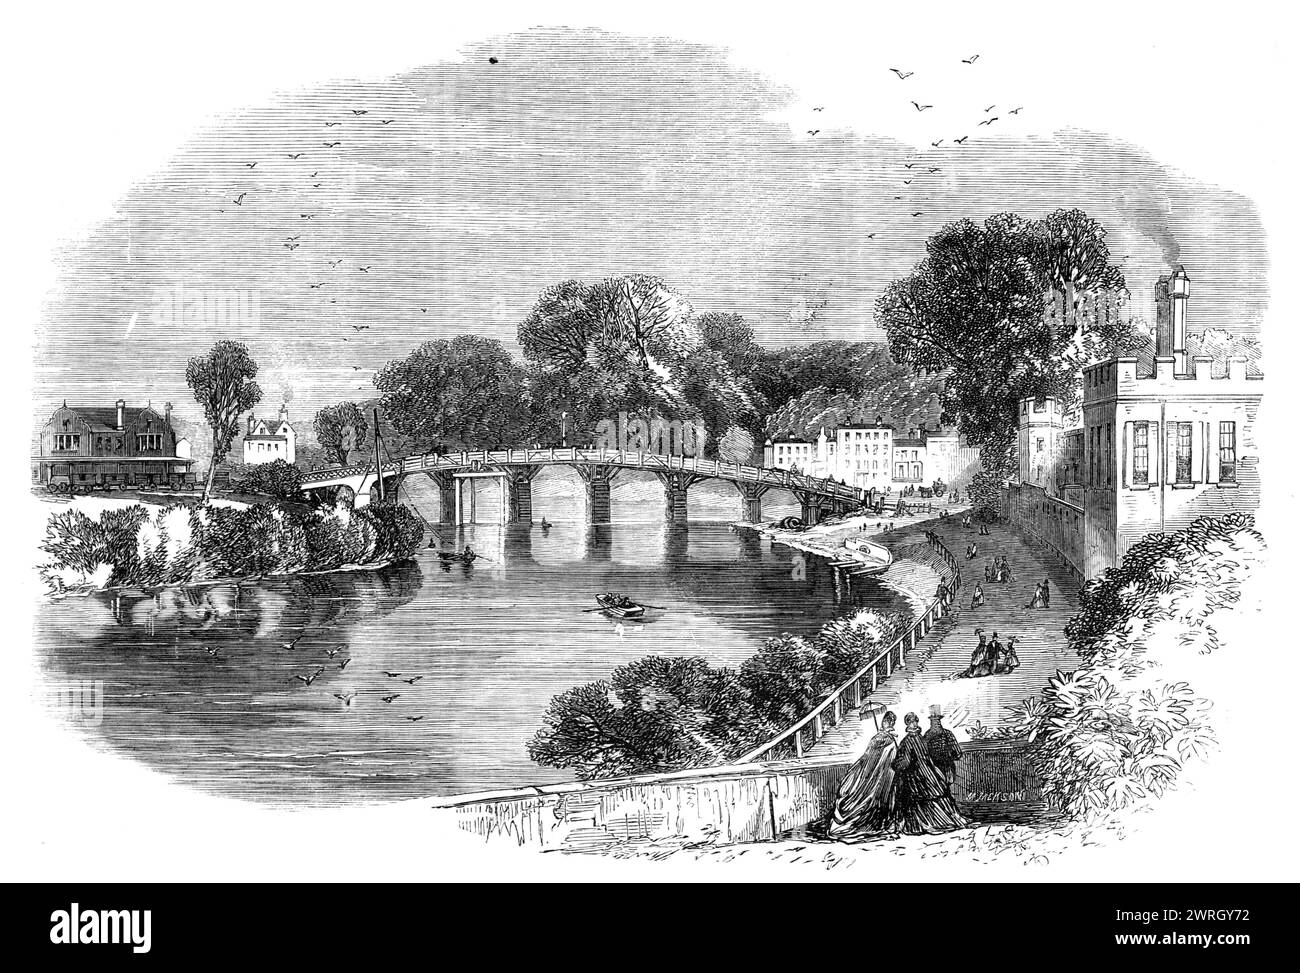 Vieux pont de Hampton court, 1864. Gravure de '...l'ancien pont à péage en bois à Hampton court, qui est maintenant sur le point d'être enlevé par ordre de son propriétaire, Mr. T. W. Allen, de Newlands Park, Buckinghamshire, qui a décidé d'en construire un nouveau en fer. L'acte du Parlement pour la construction du premier pont de Hampton court a été obtenu sous le règne de George Ier, et ce pont a été ouvert en décembre 1753. Il a été remplacé par le pont actuel il y a environ trente ou quarante ans. Cette structure, entièrement en bois, comporte onze ouvertures, variant de 25 pieds. à 29 pieds portée au niveau de la ligne de flottaison. Son wi Banque D'Images